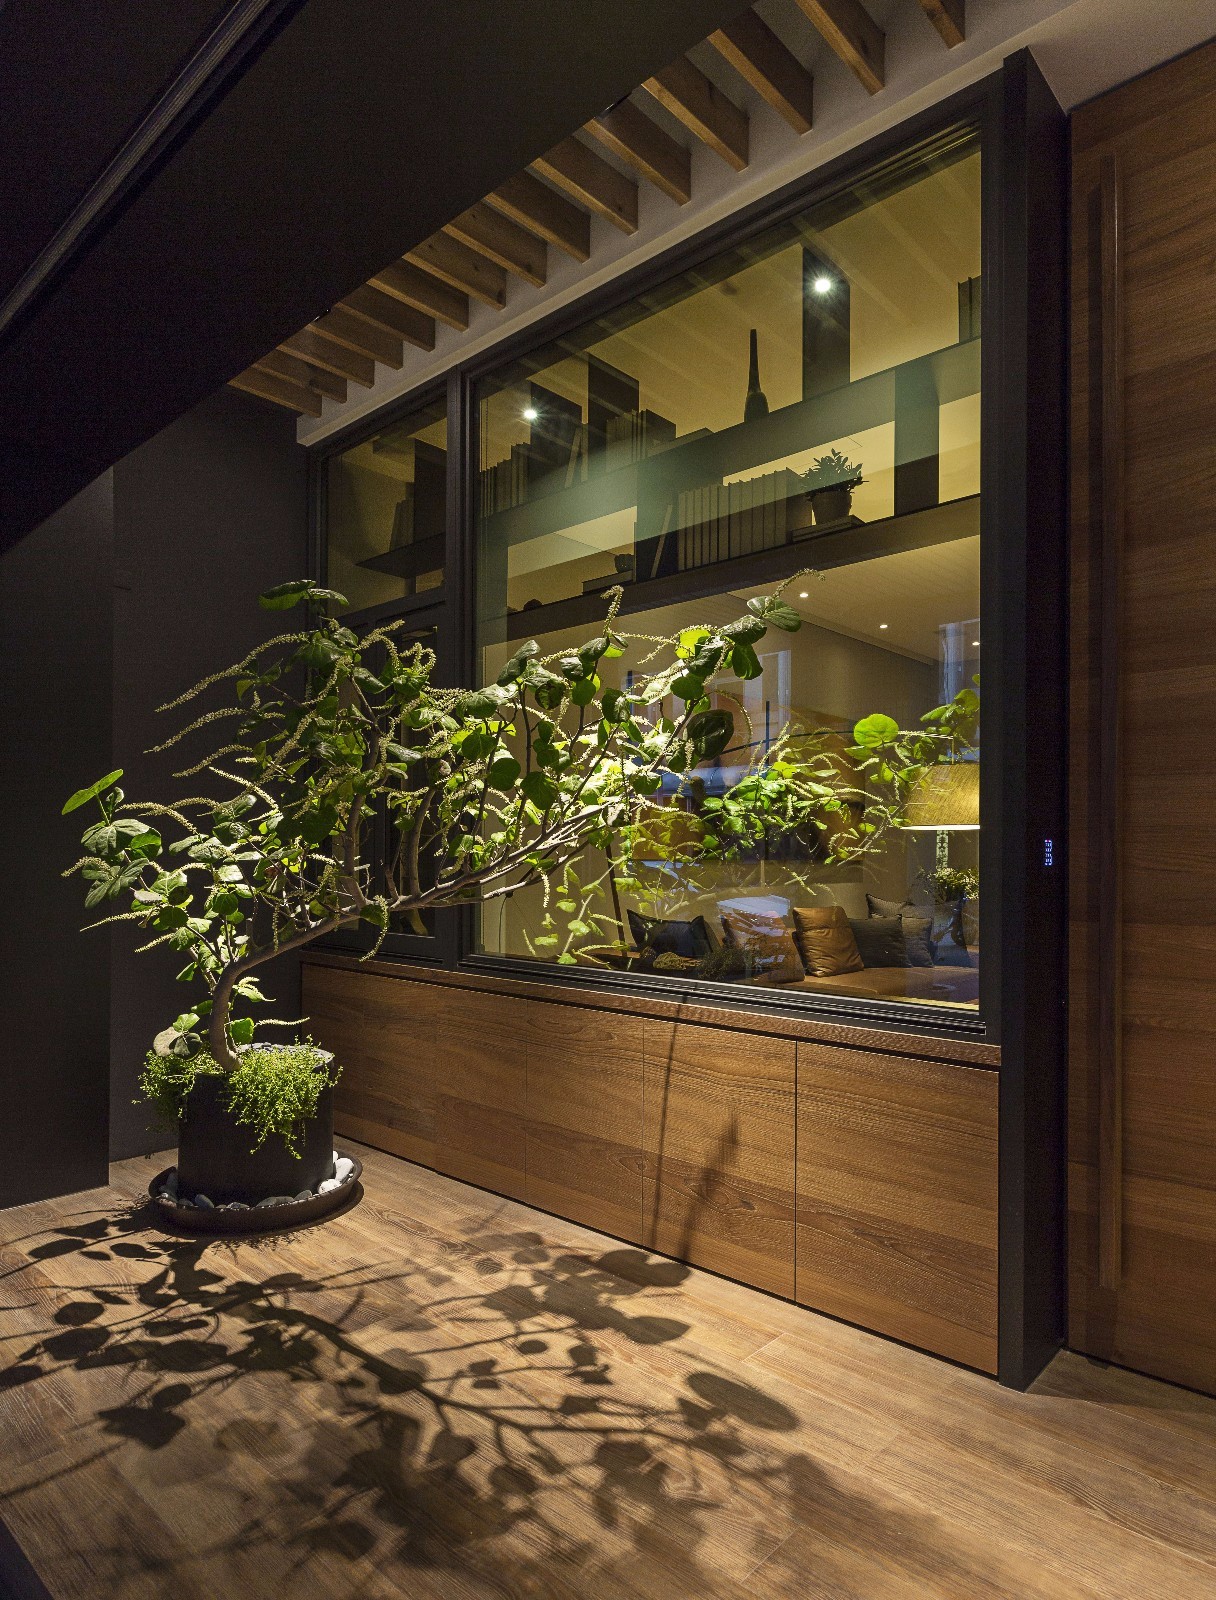 阳台放置了绿植，加上灯光的渲染，营造出稳定、协调、温馨的空间感受。